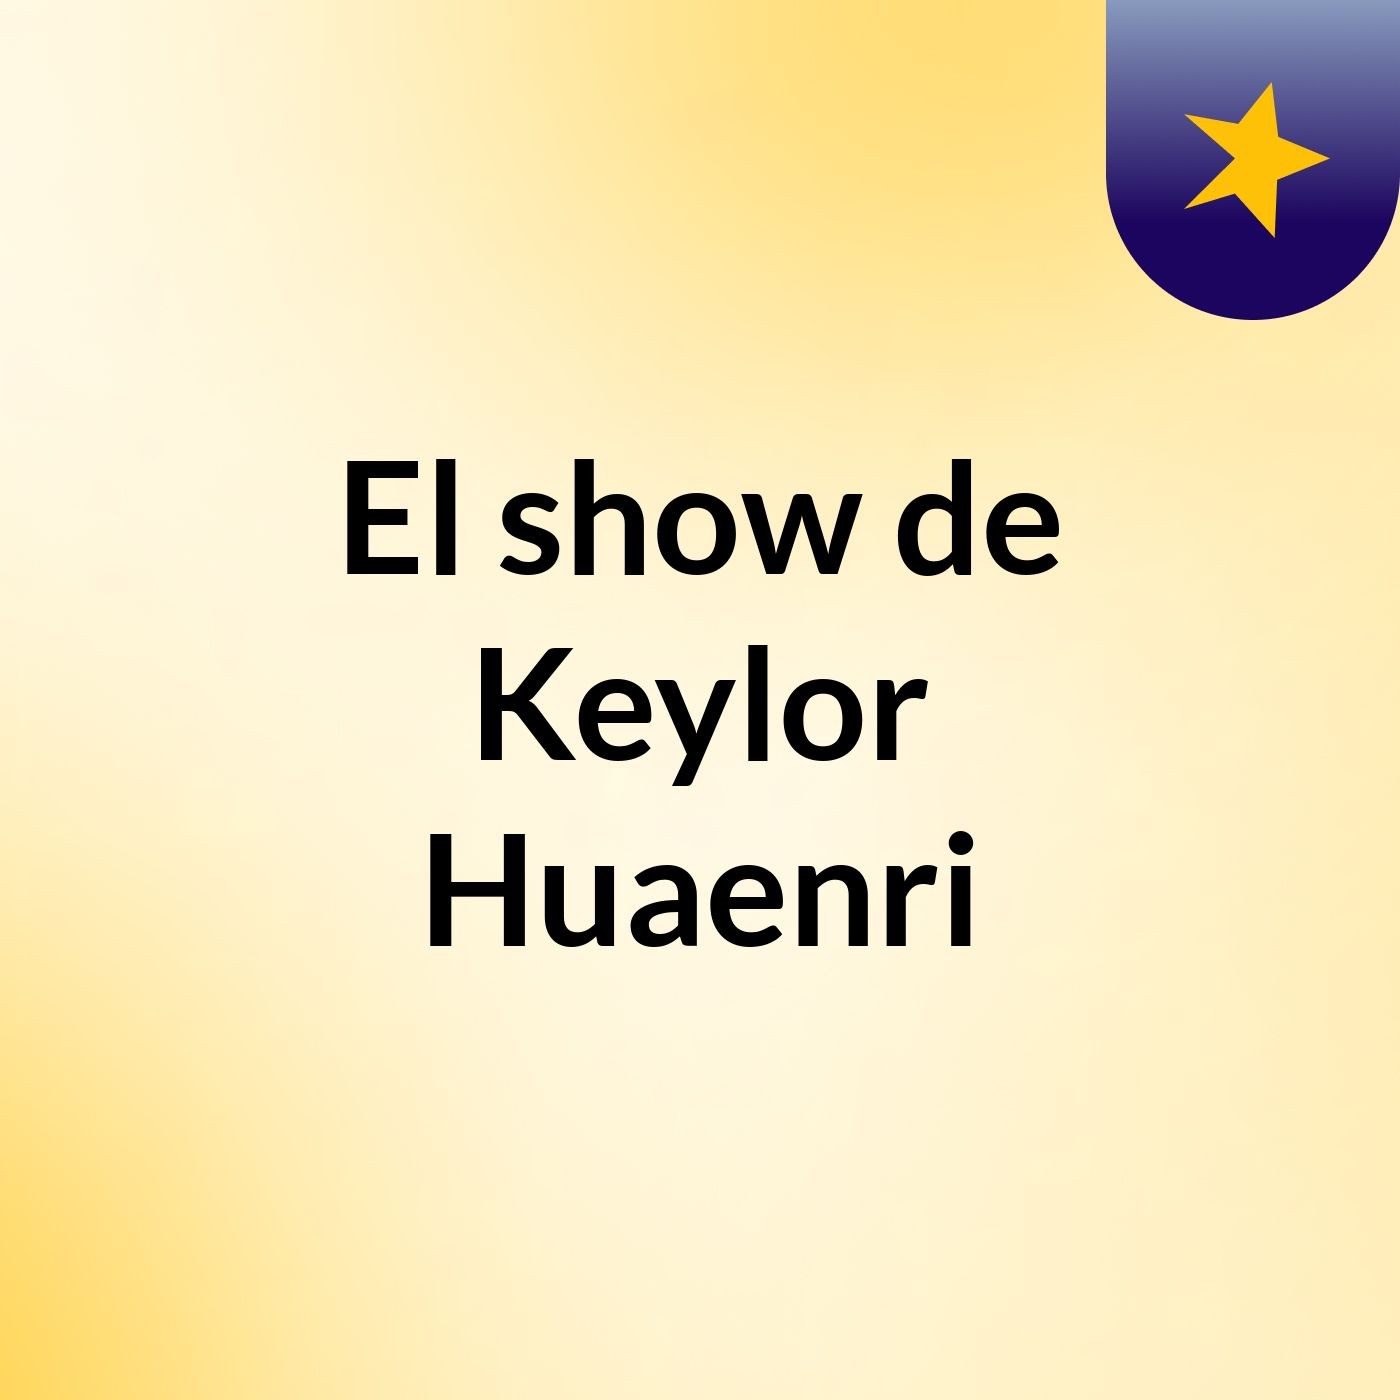 El show de Keylor Huaenri